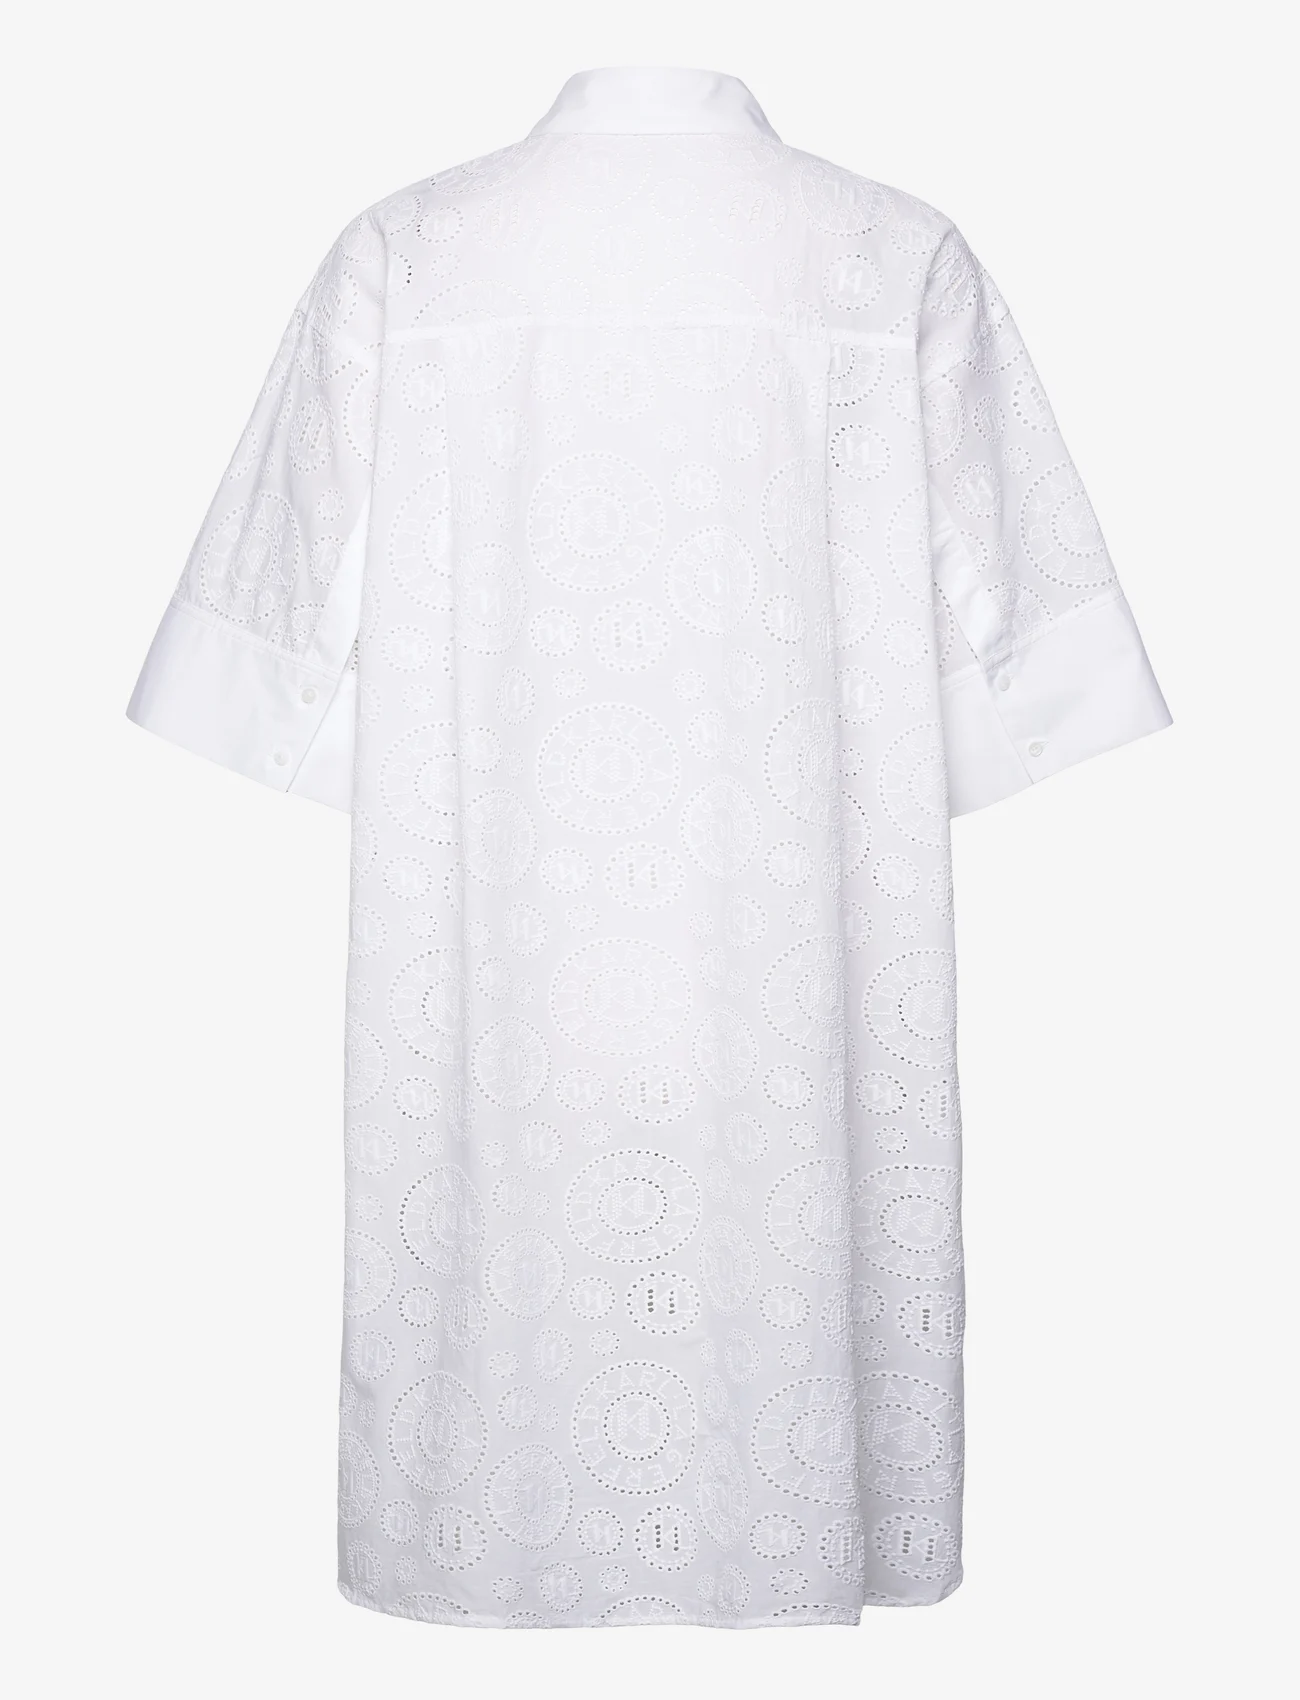 Karl Lagerfeld - Broderie Anglaise Shirtdress - skjortklänningar - white - 1